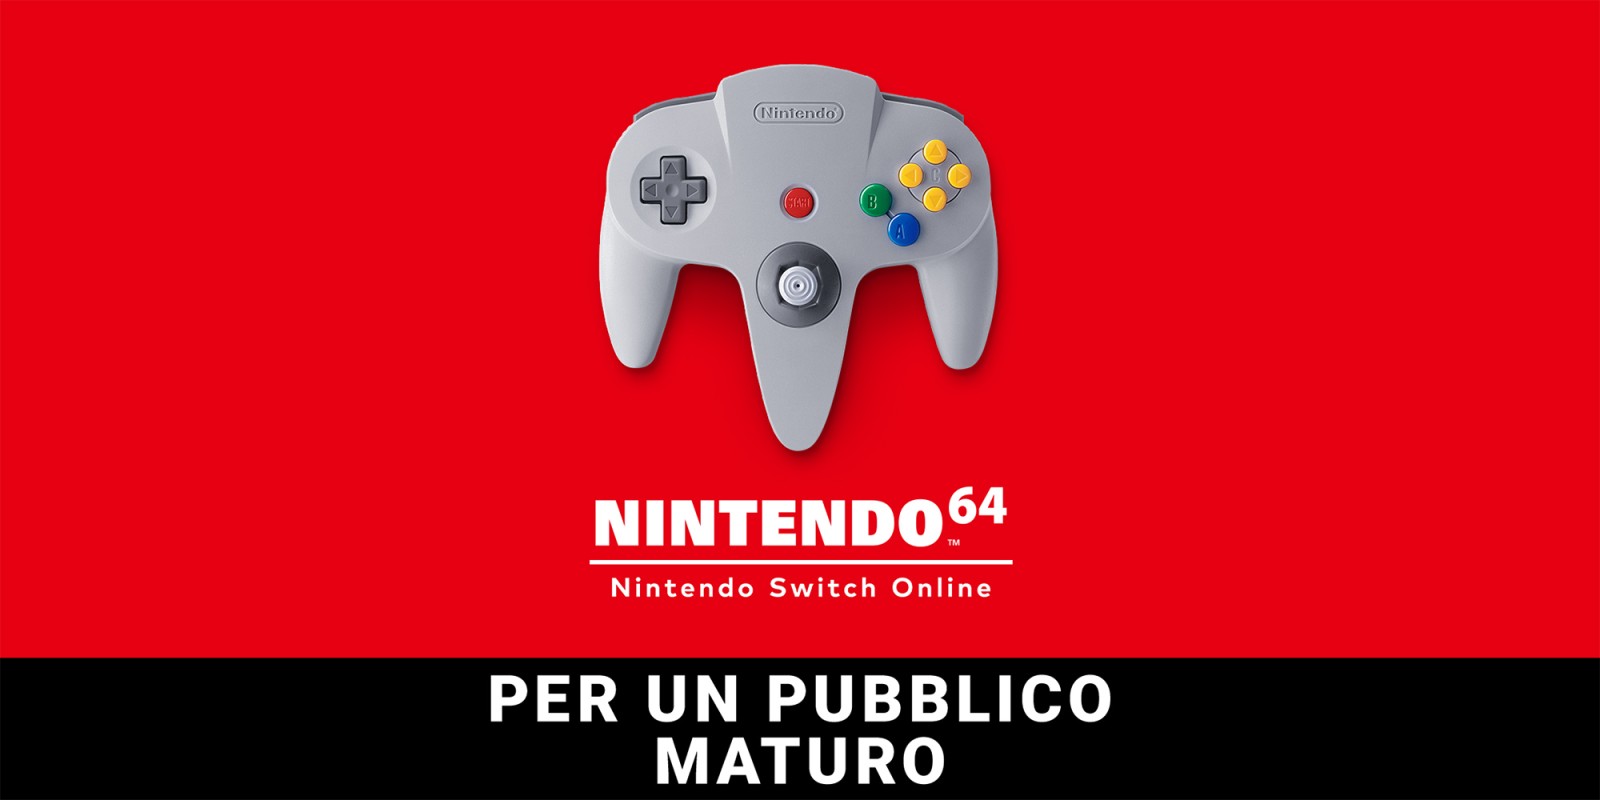 Nintendo 64 – Nintendo Switch Online: Per un pubblico maturo